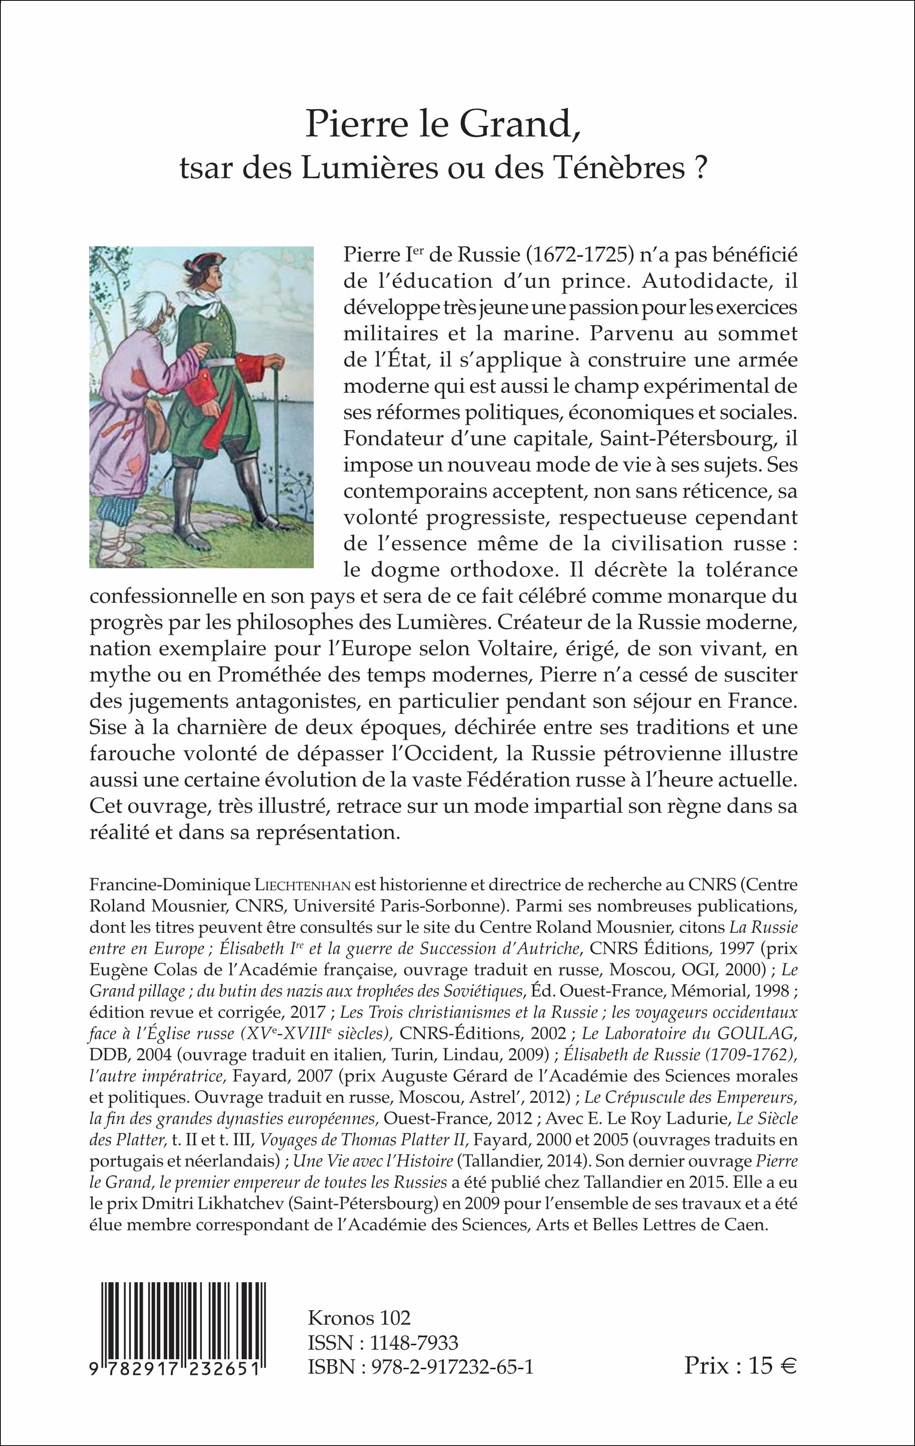 Couverture 4. Editions SMP. Pierre le Grand., tsar des Lumières ou des Ténèbres, par Francine-Dominique Liechtenhan. 2017-07-01